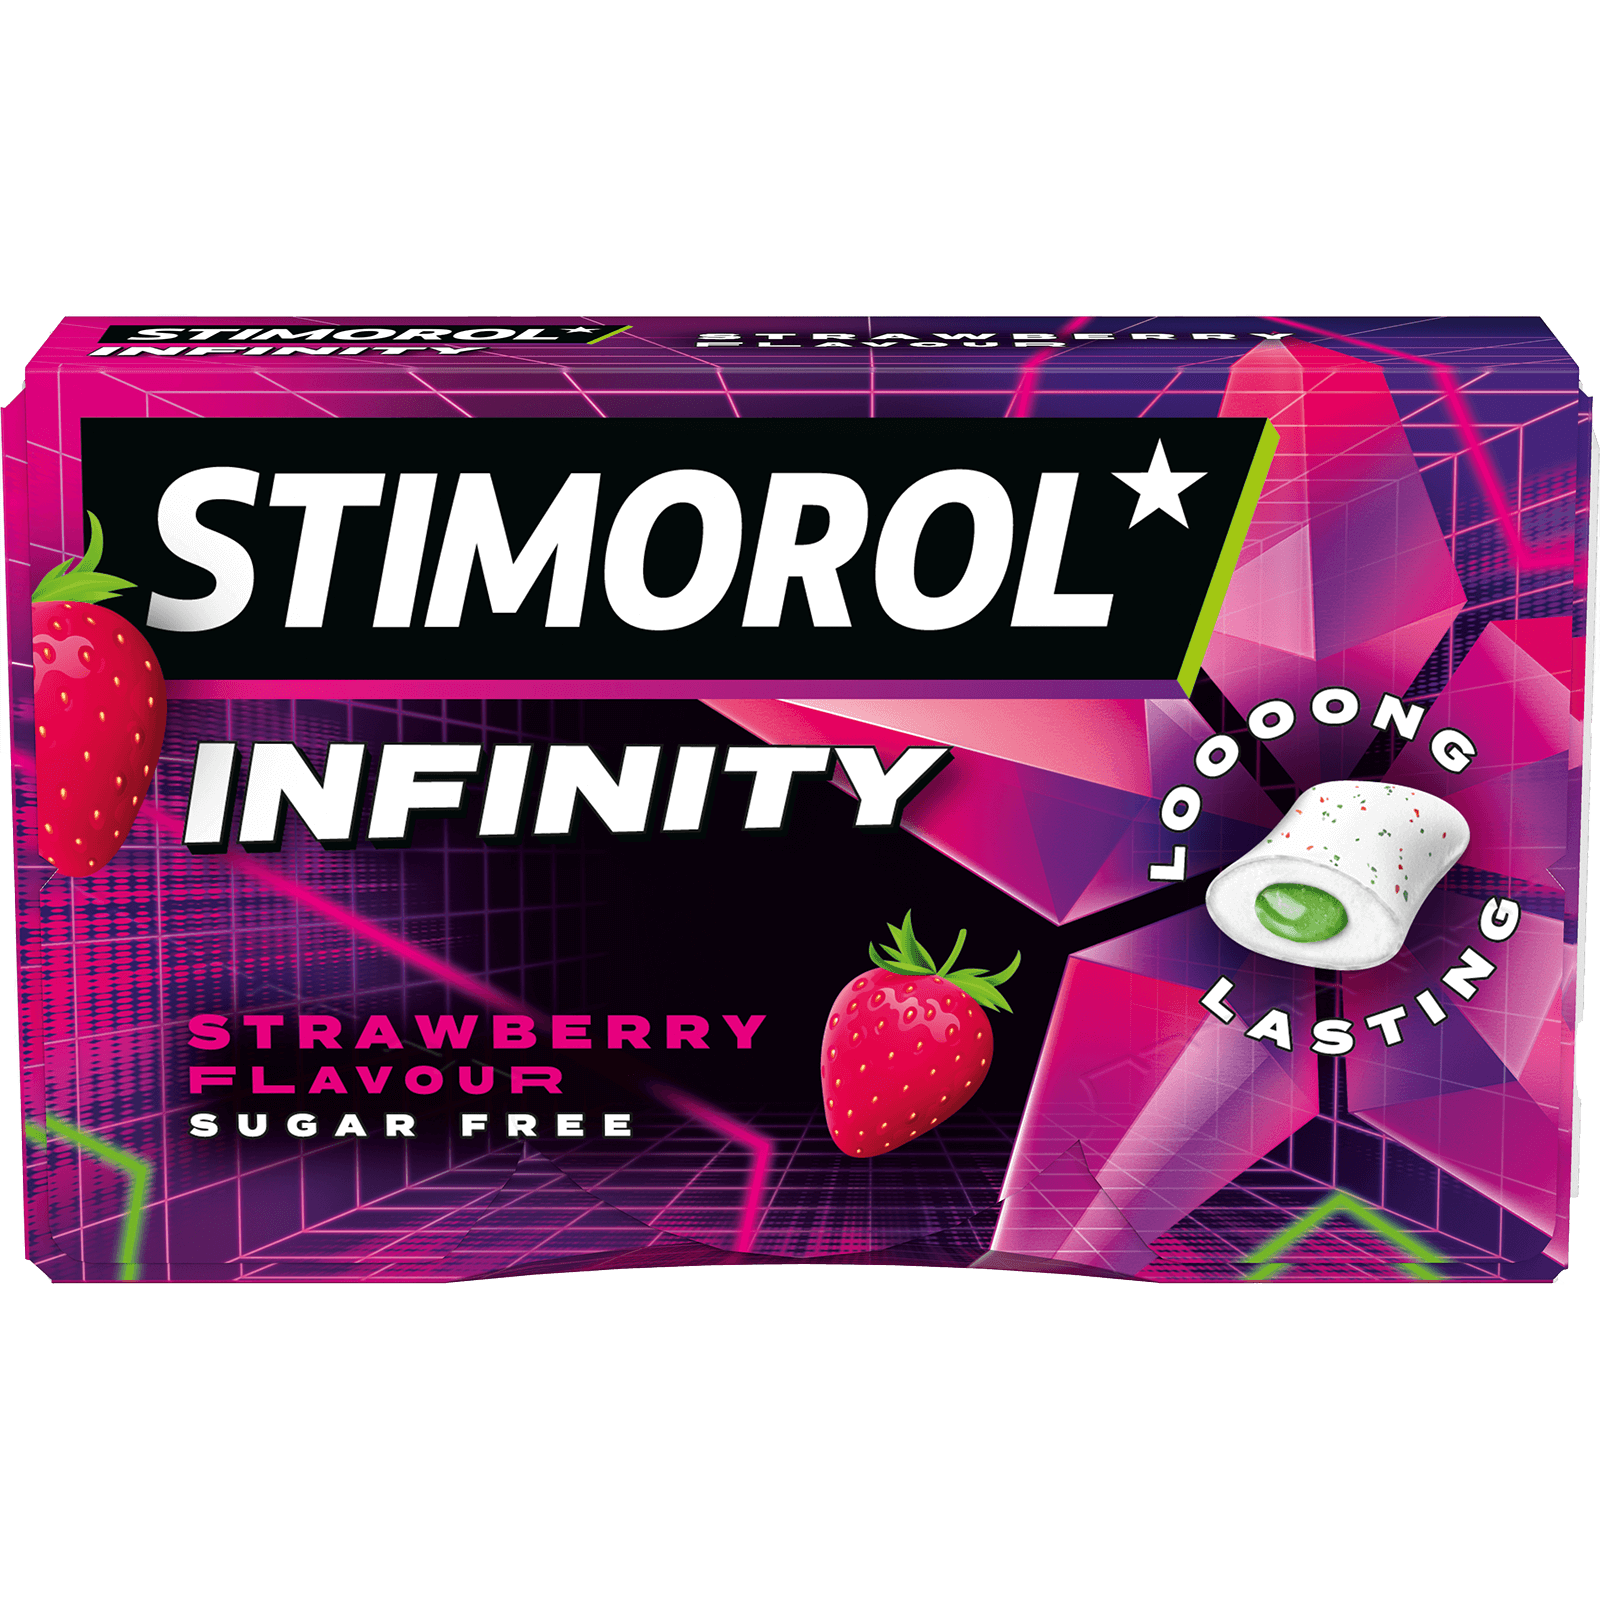 Stimorol Infinity Strawberry